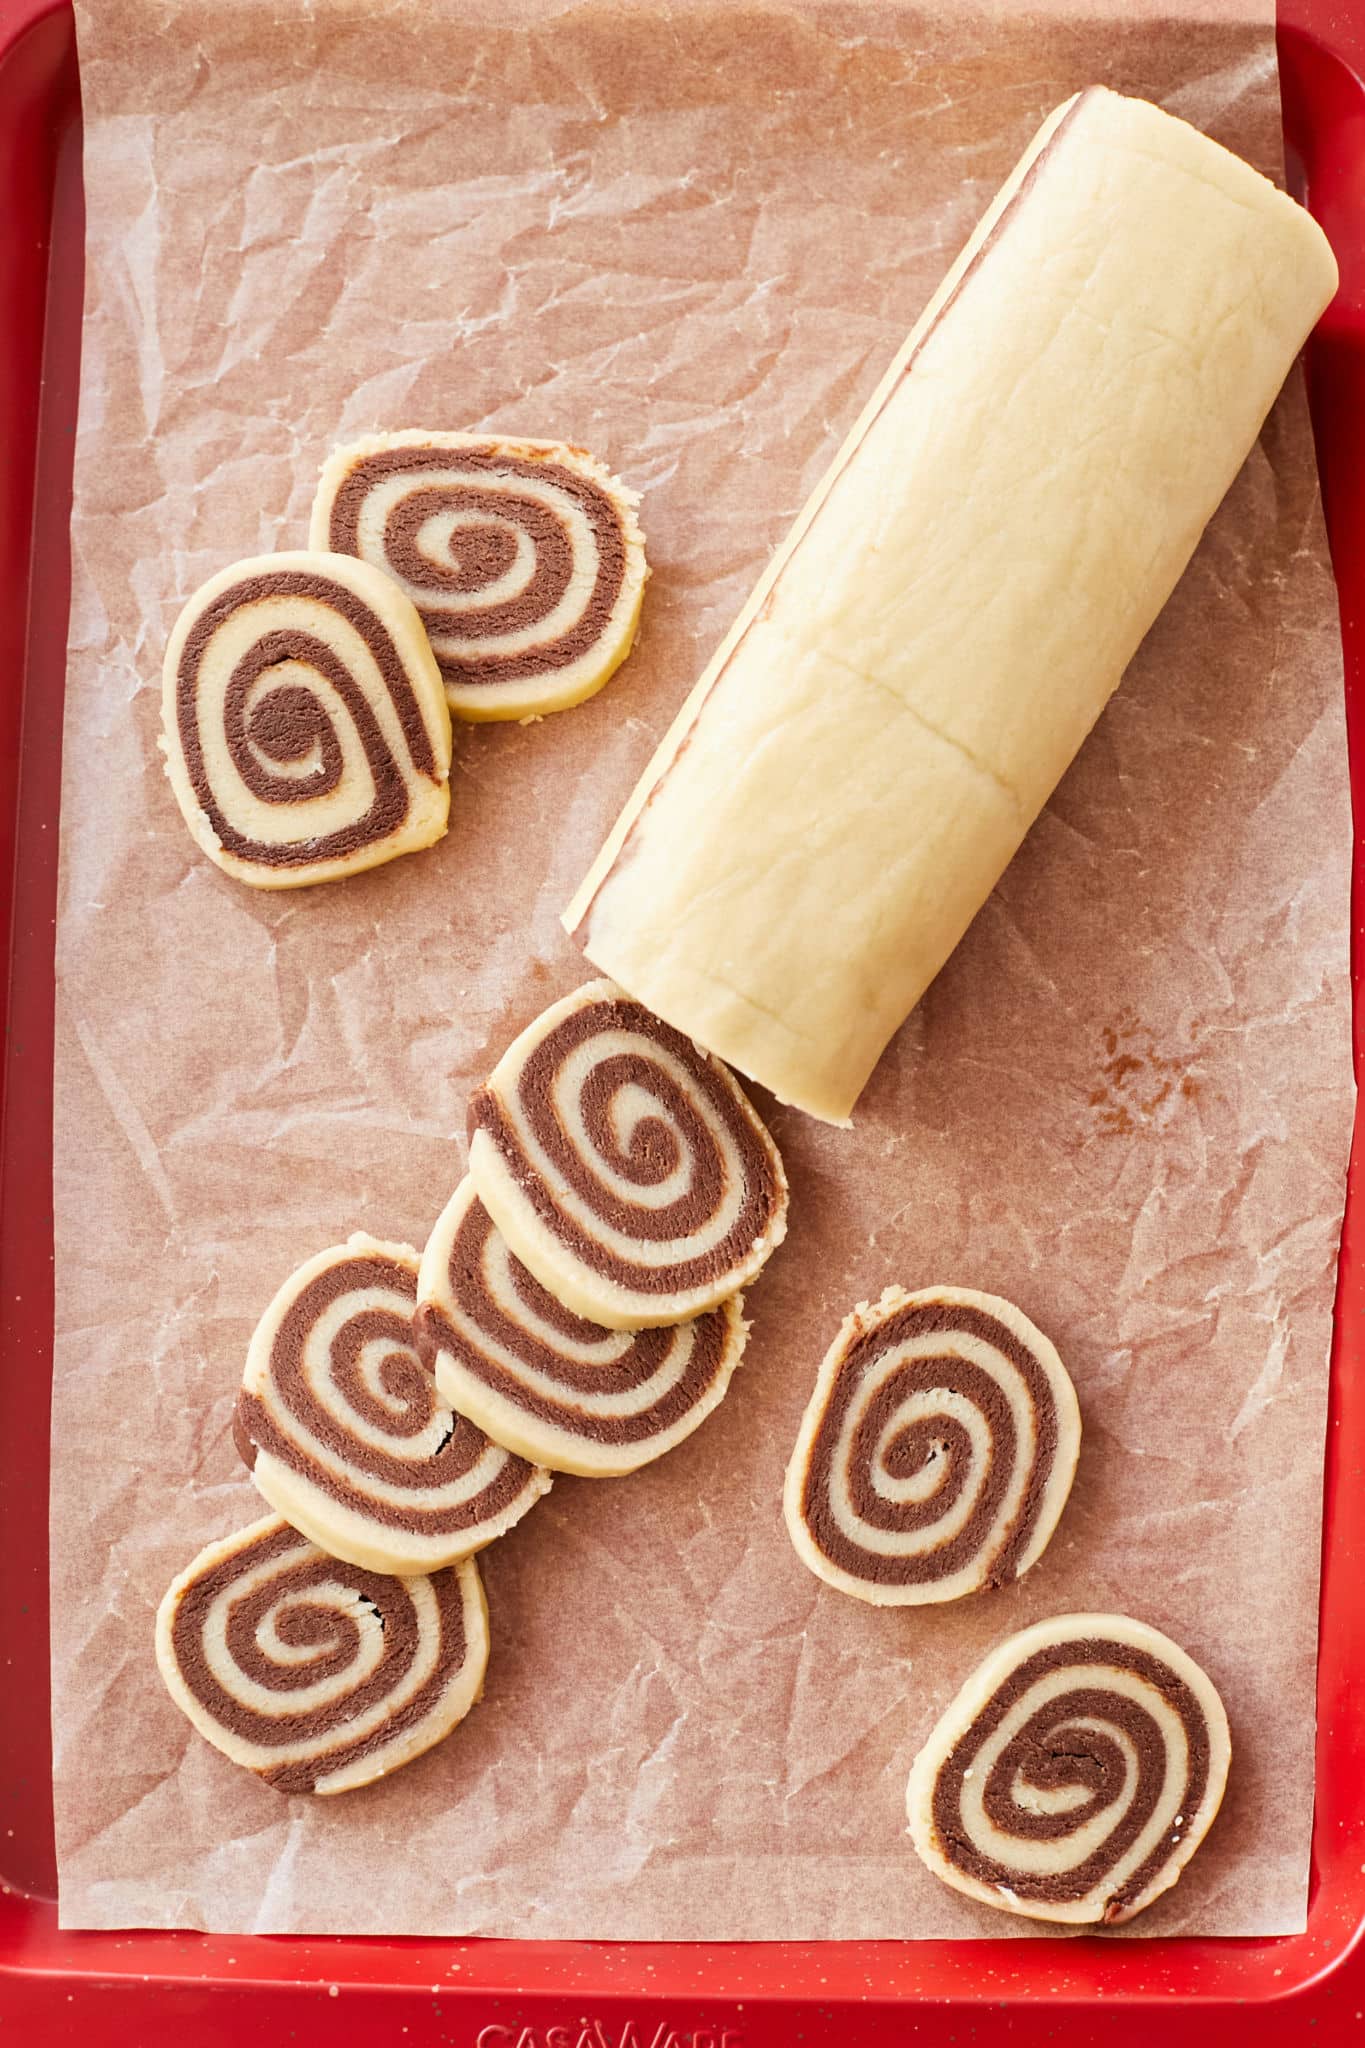 A log of pinwheel cookies being sliced.